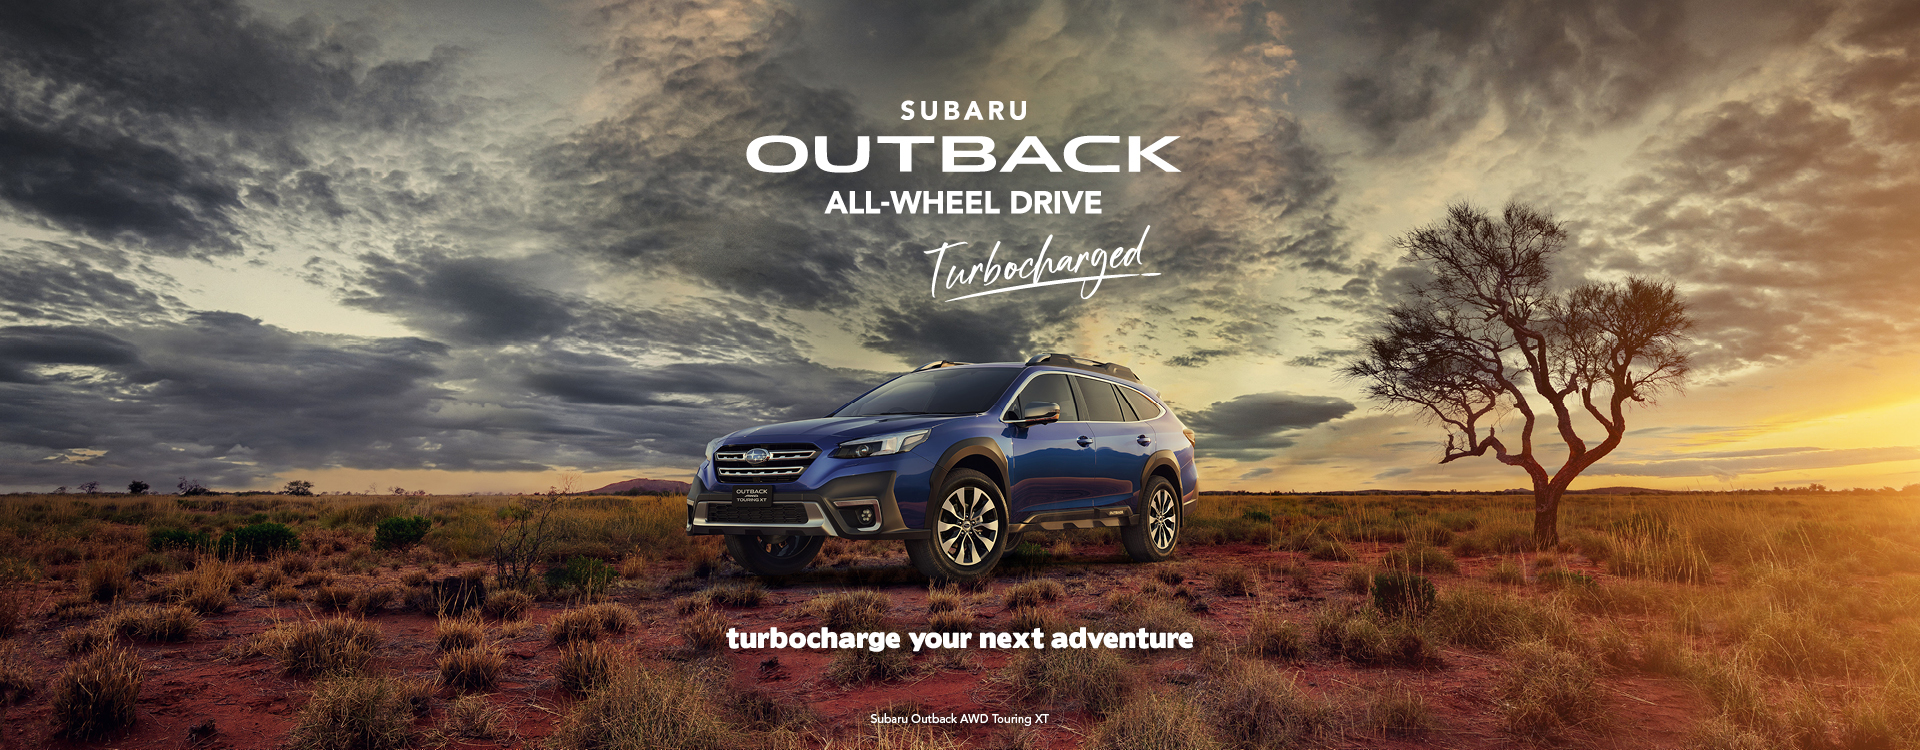 Subaru Outback Image